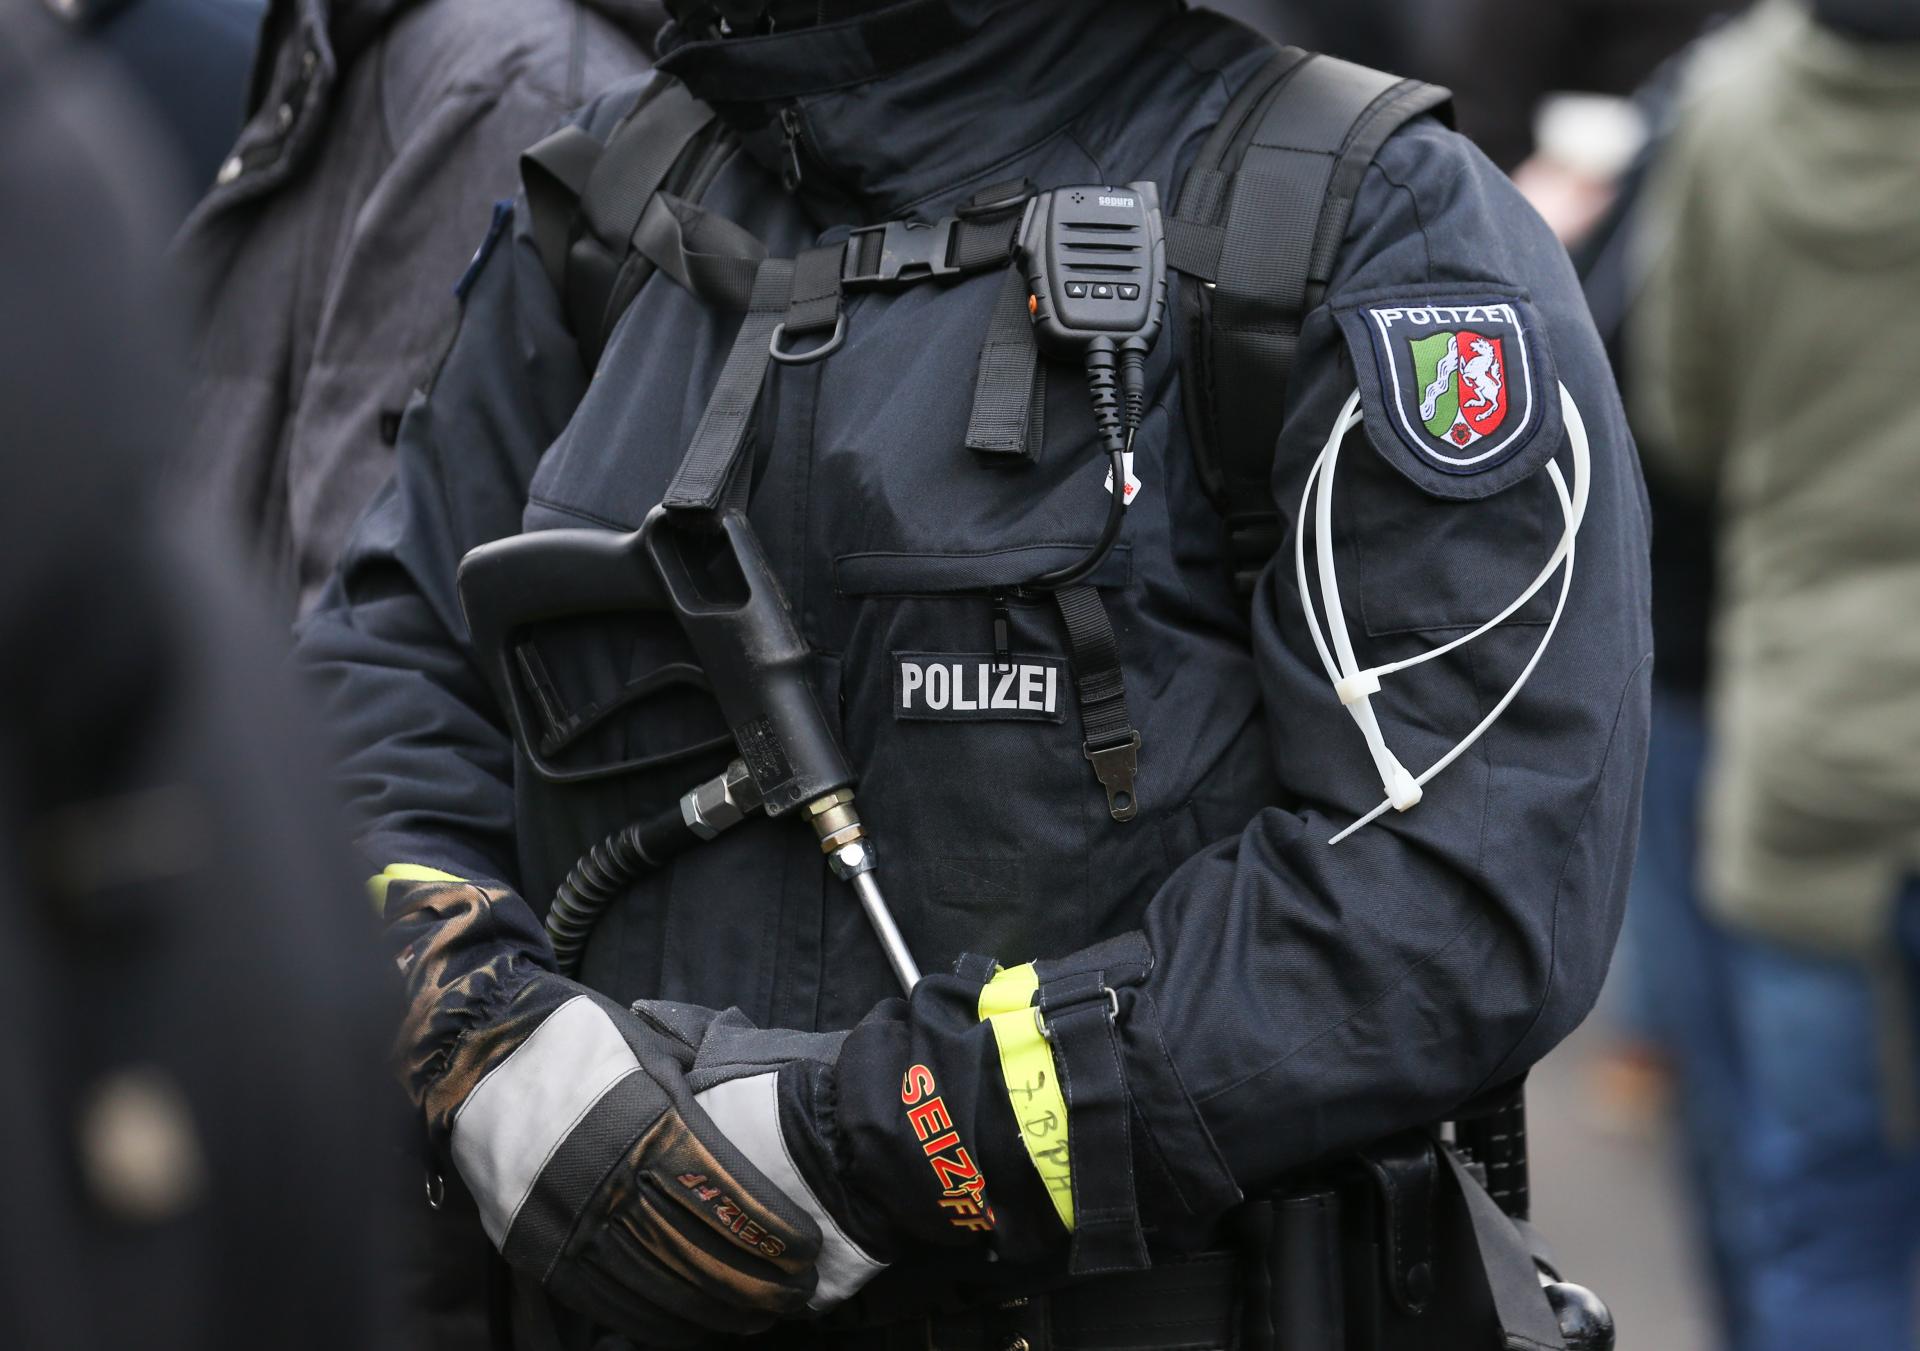 Brutálny útok v centre nemeckého mesta. Muž zranil nožom kritika islamu aj policajta